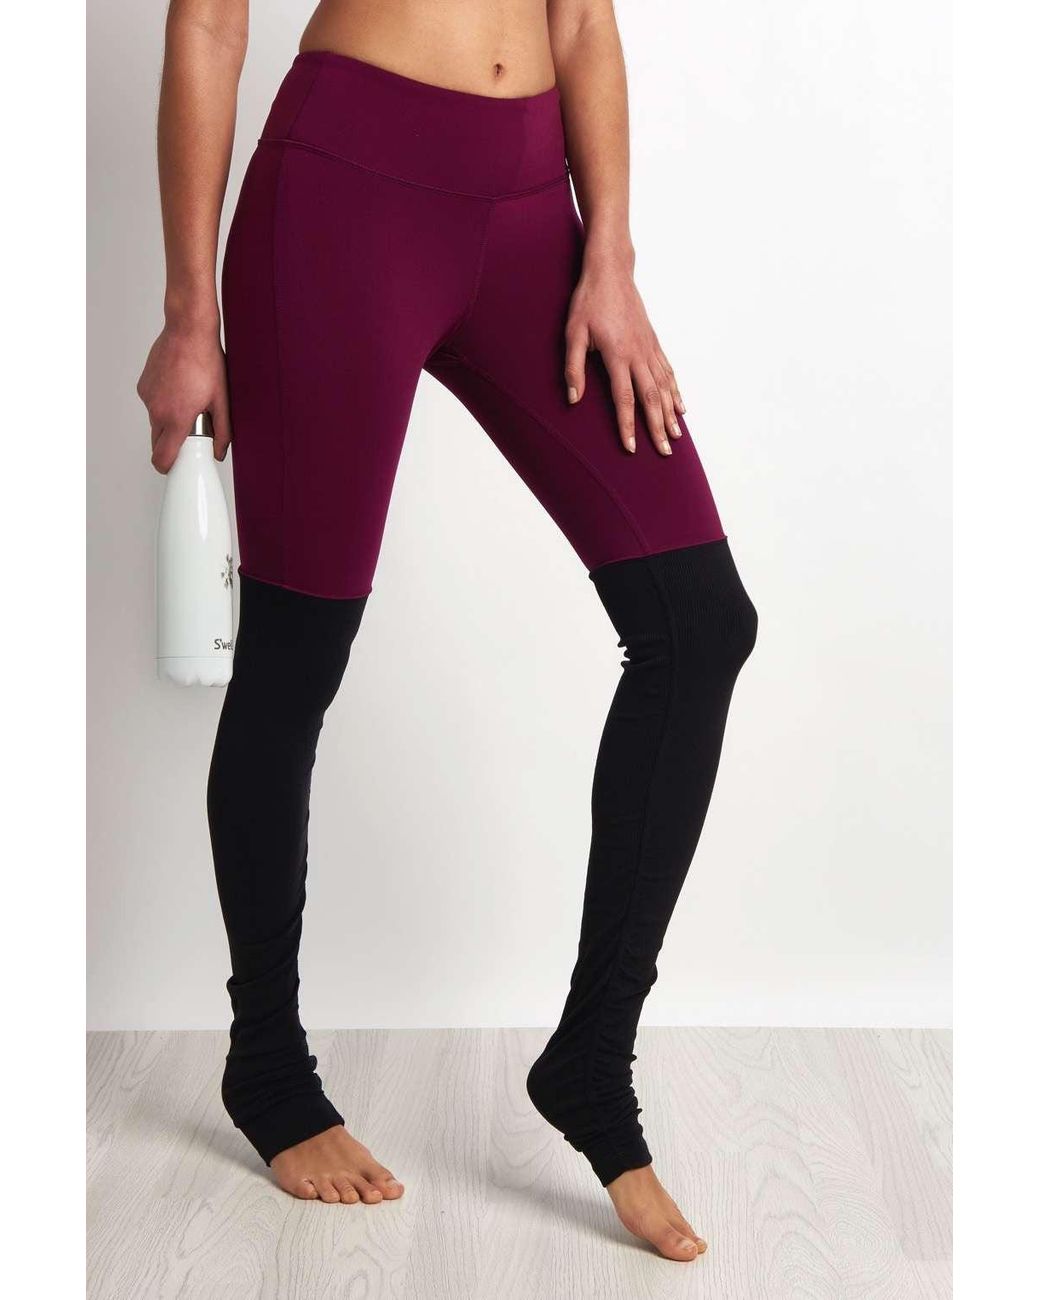 Alo Yoga Goddess leggings - in total burgundy / wine - Depop